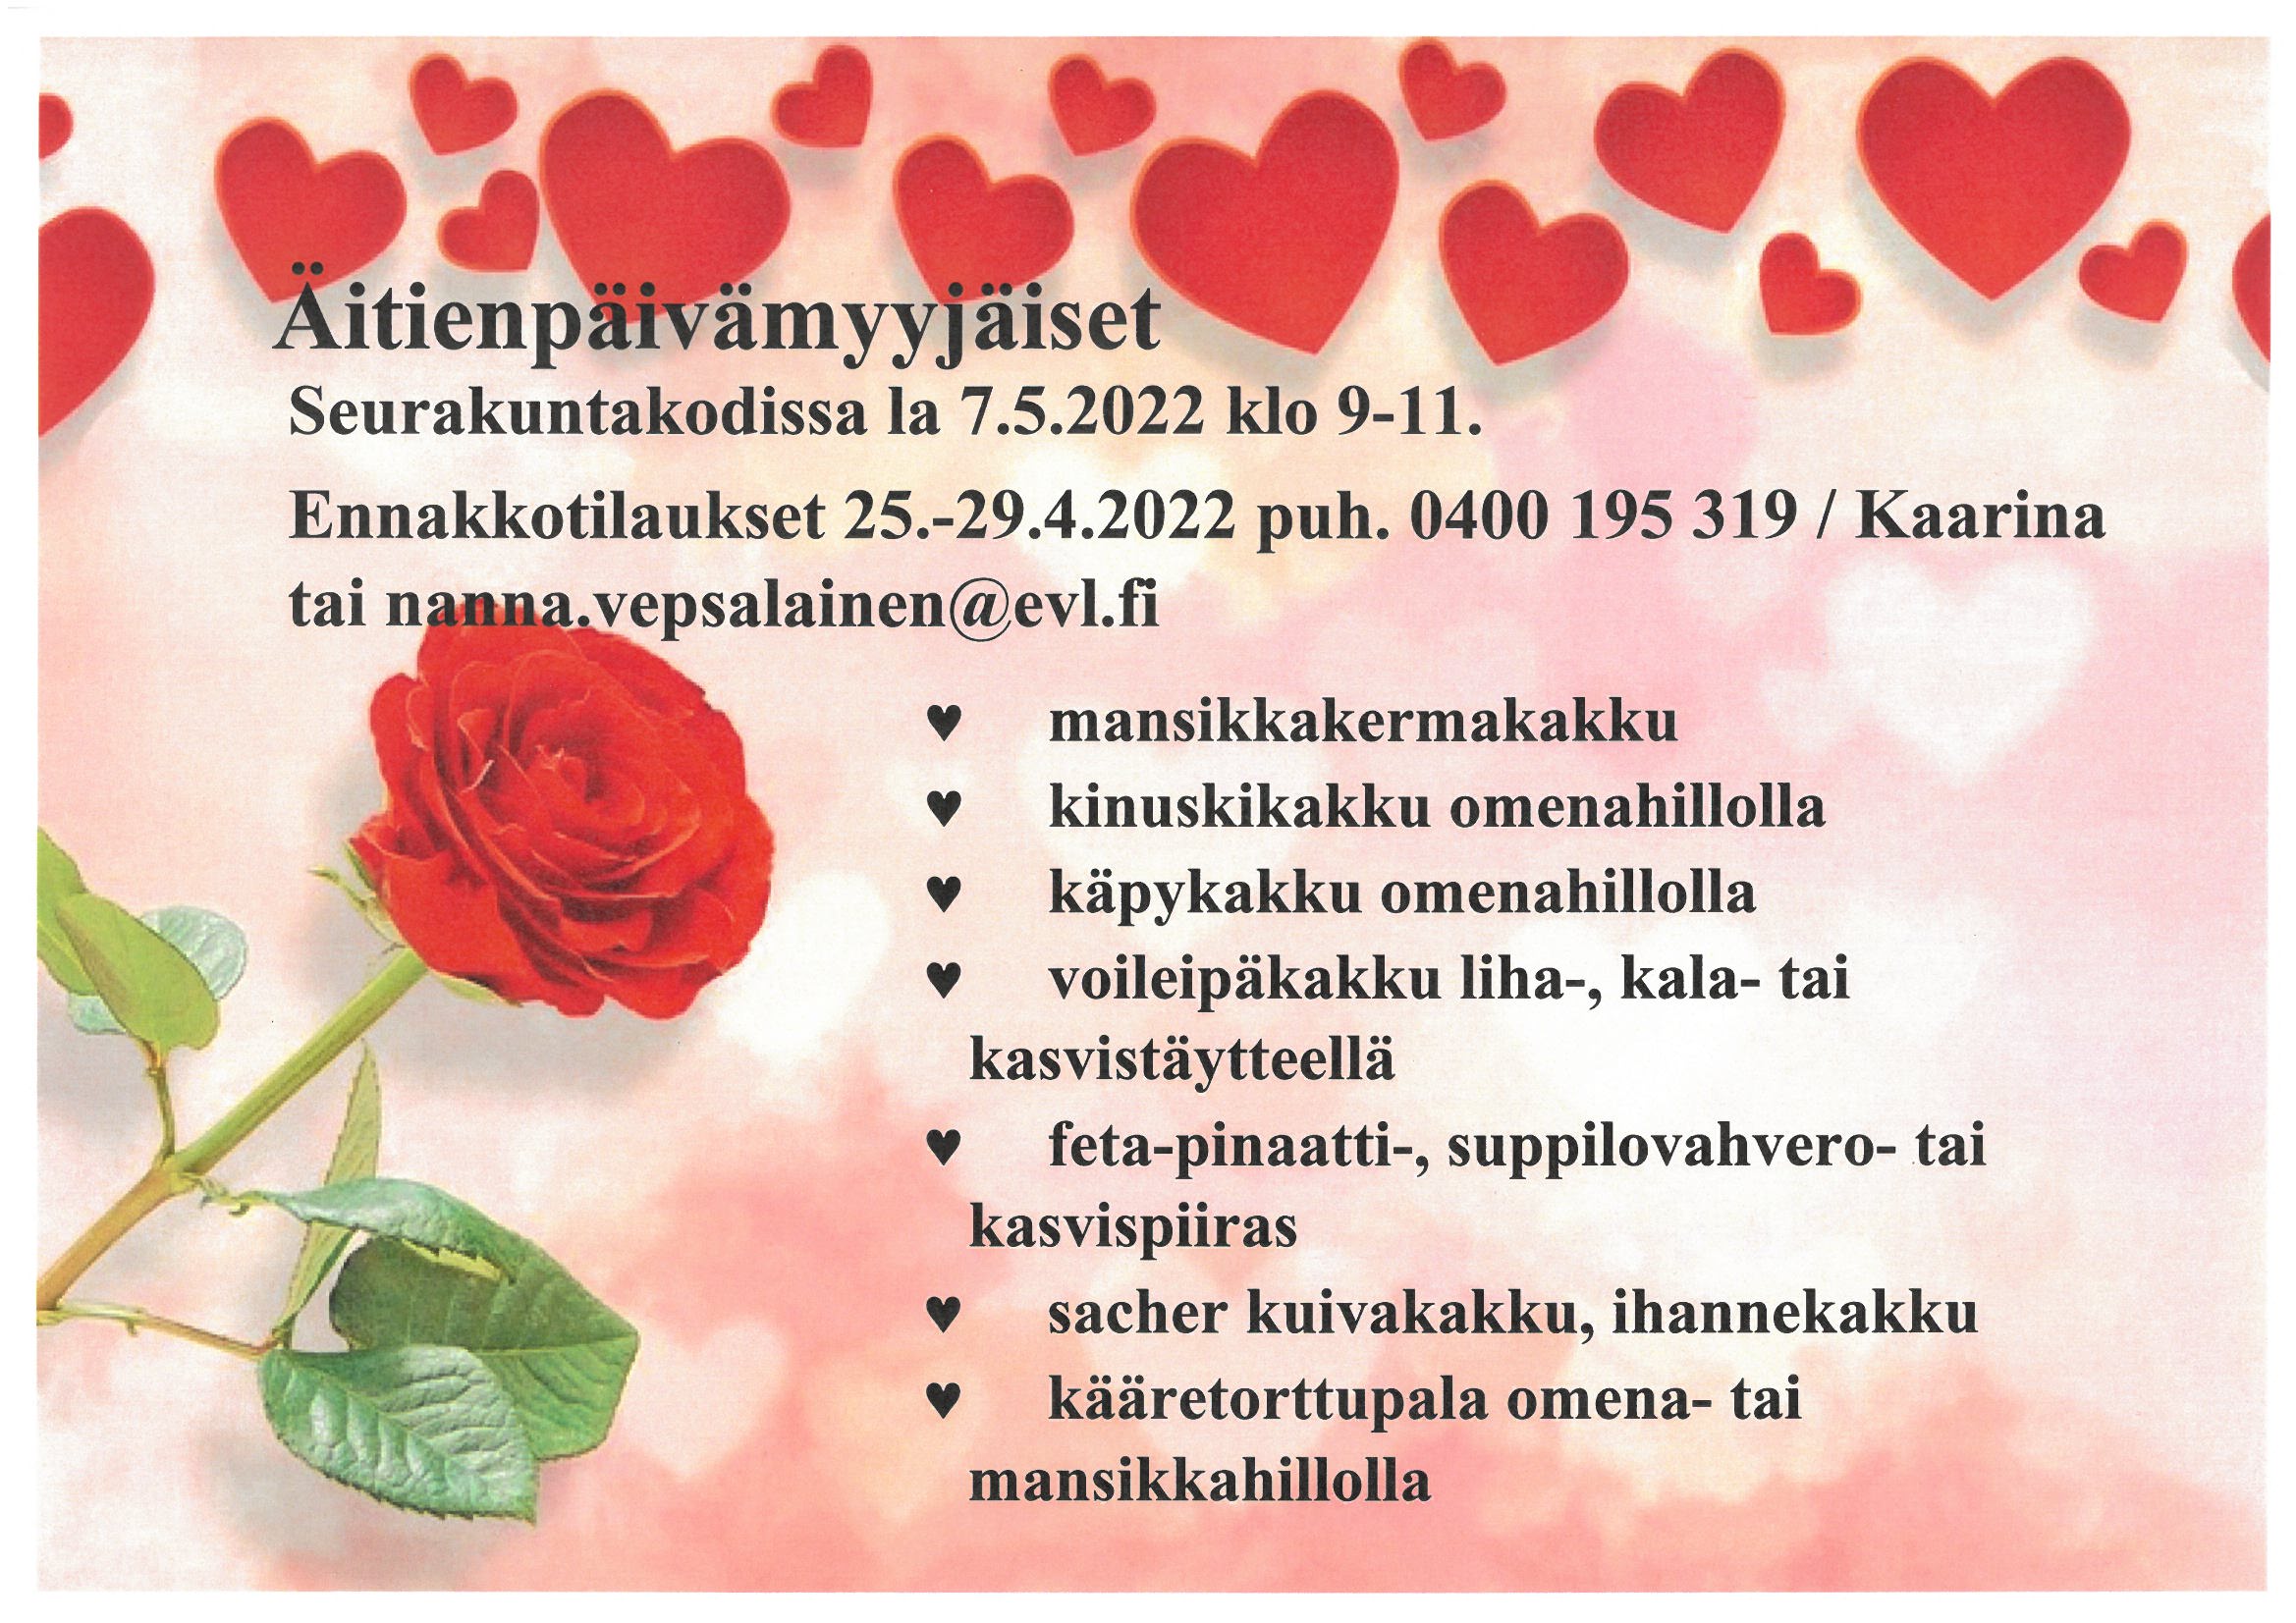 Äitienpäivämyyjäiset 7.5.2022 klo 9-11